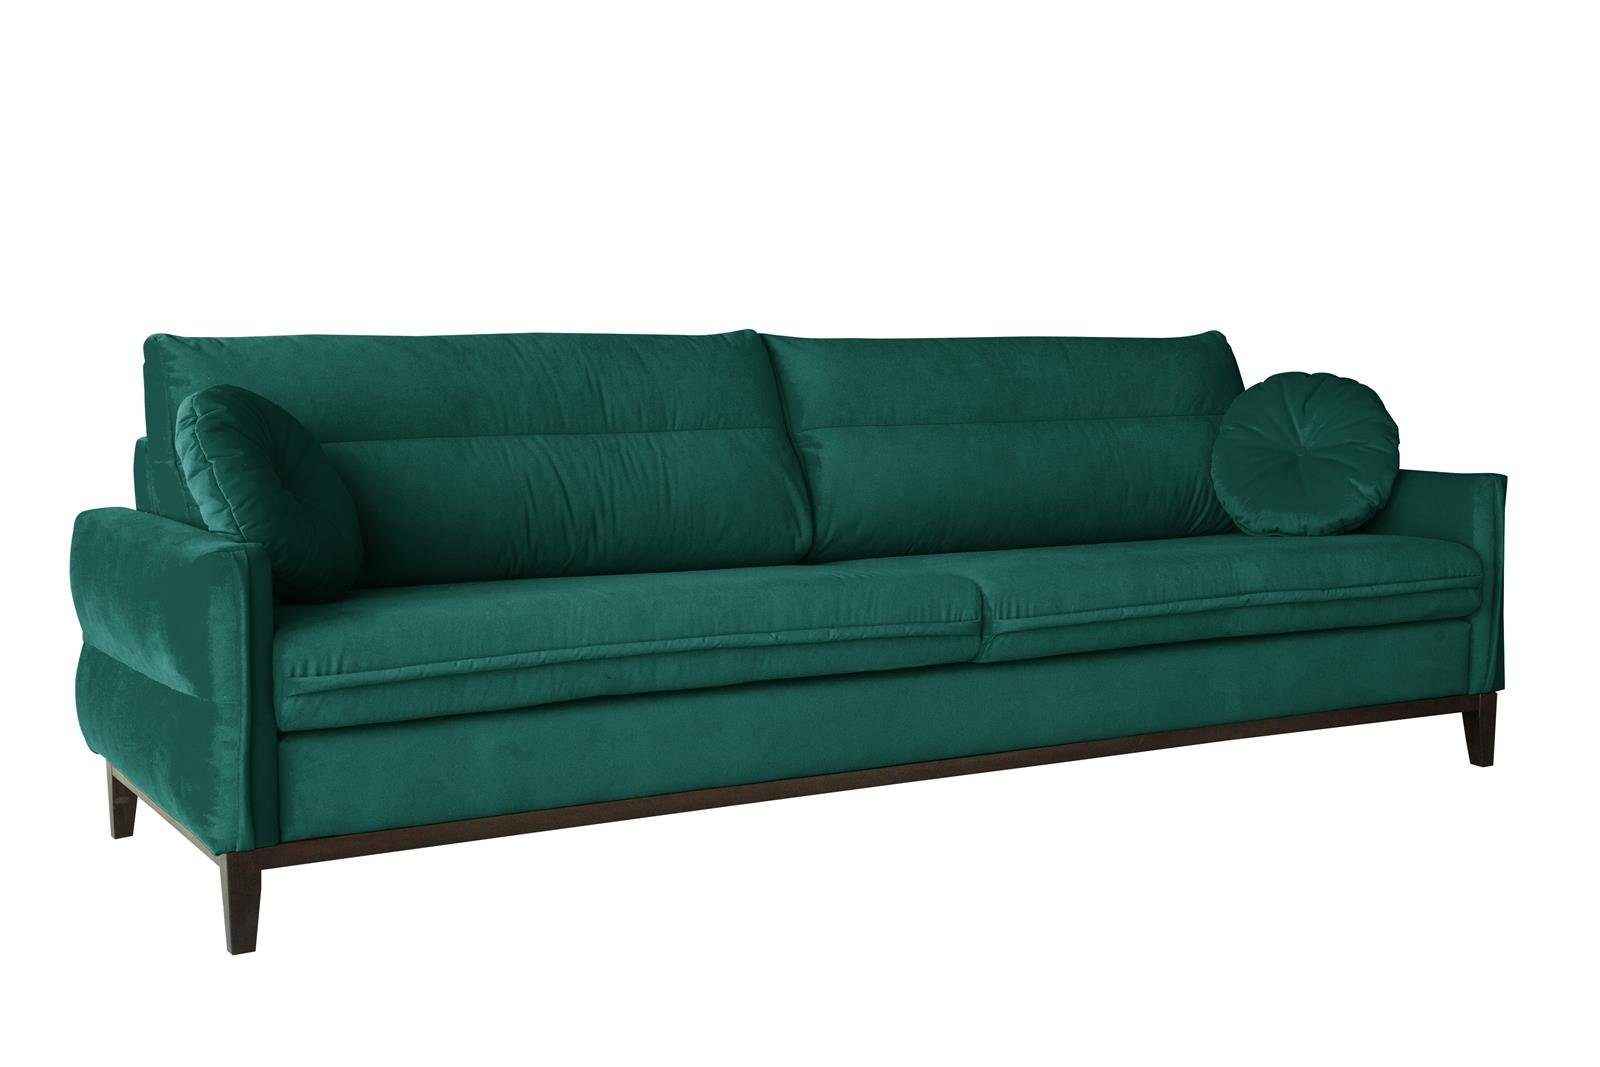 Beautysofa Sofa Belweder, 268 cm breite, Polstercouch für Wohnzimmer, 3-Sitzer Sofa aus Velourstoff, Dreisitzer im skandinavisches Stil Flasches grün (kronos 19)